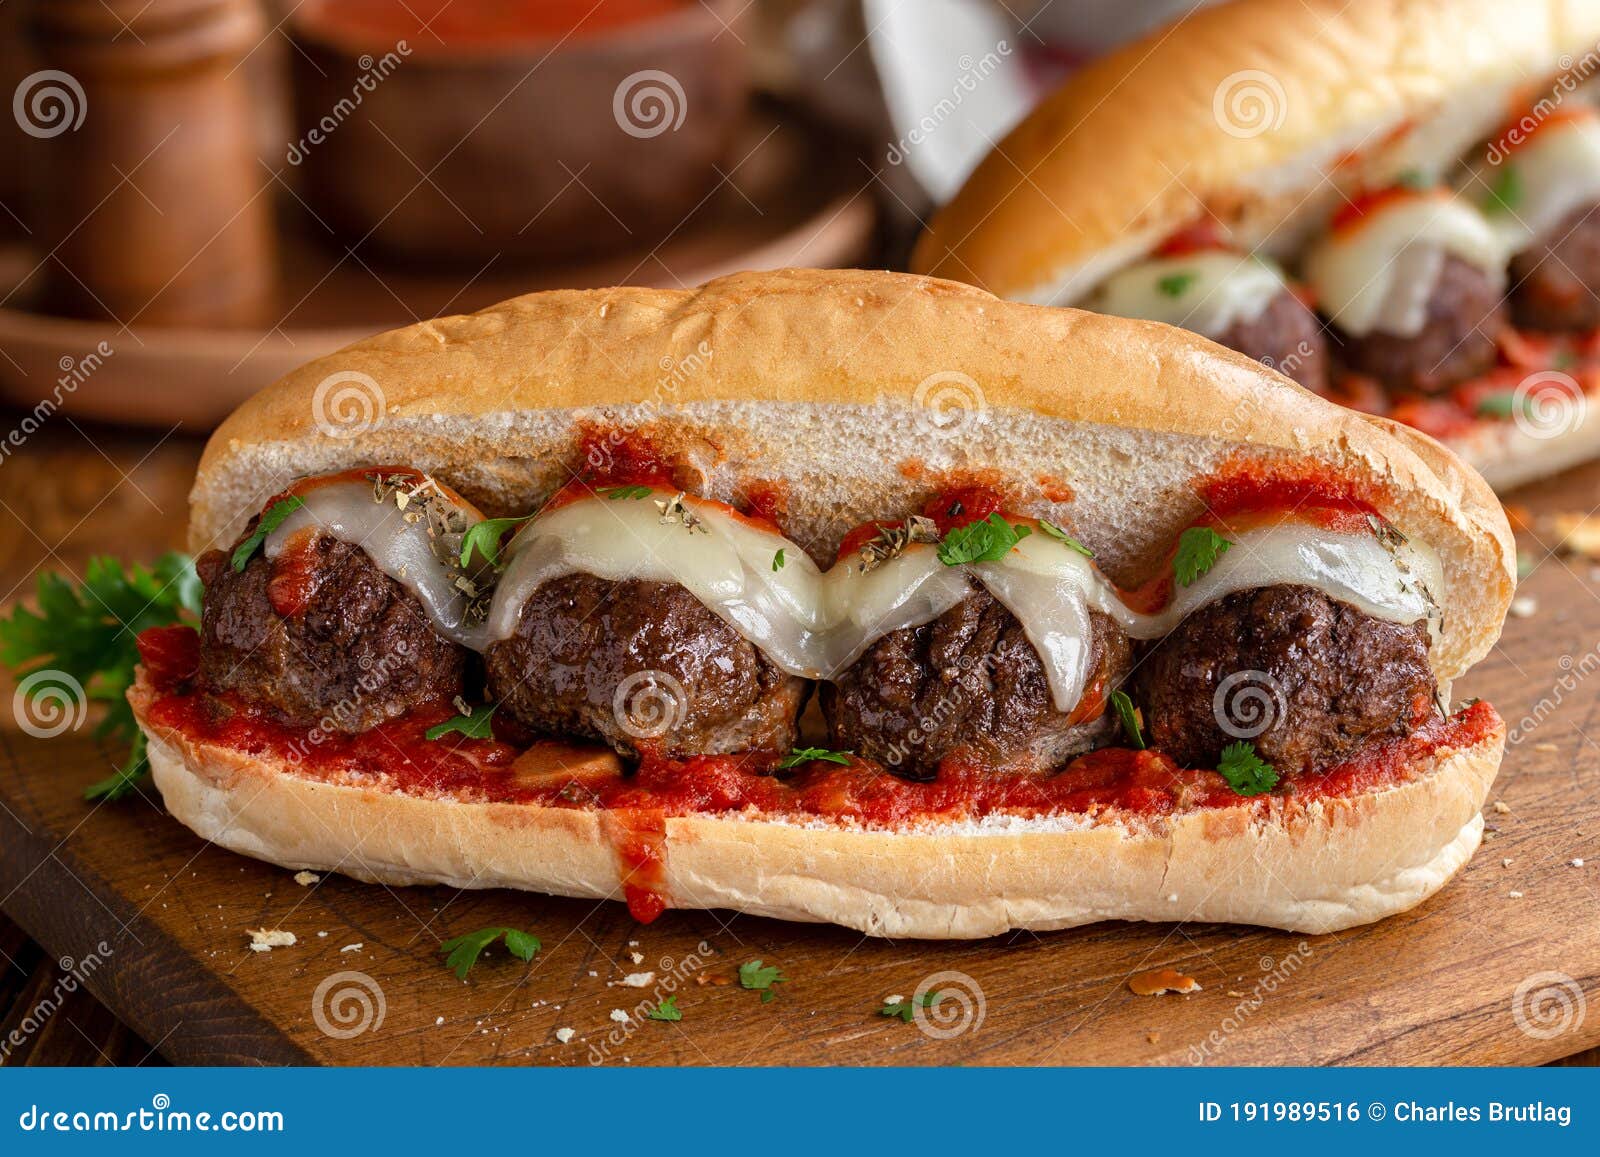 meatball sandwich on a hoagie roll